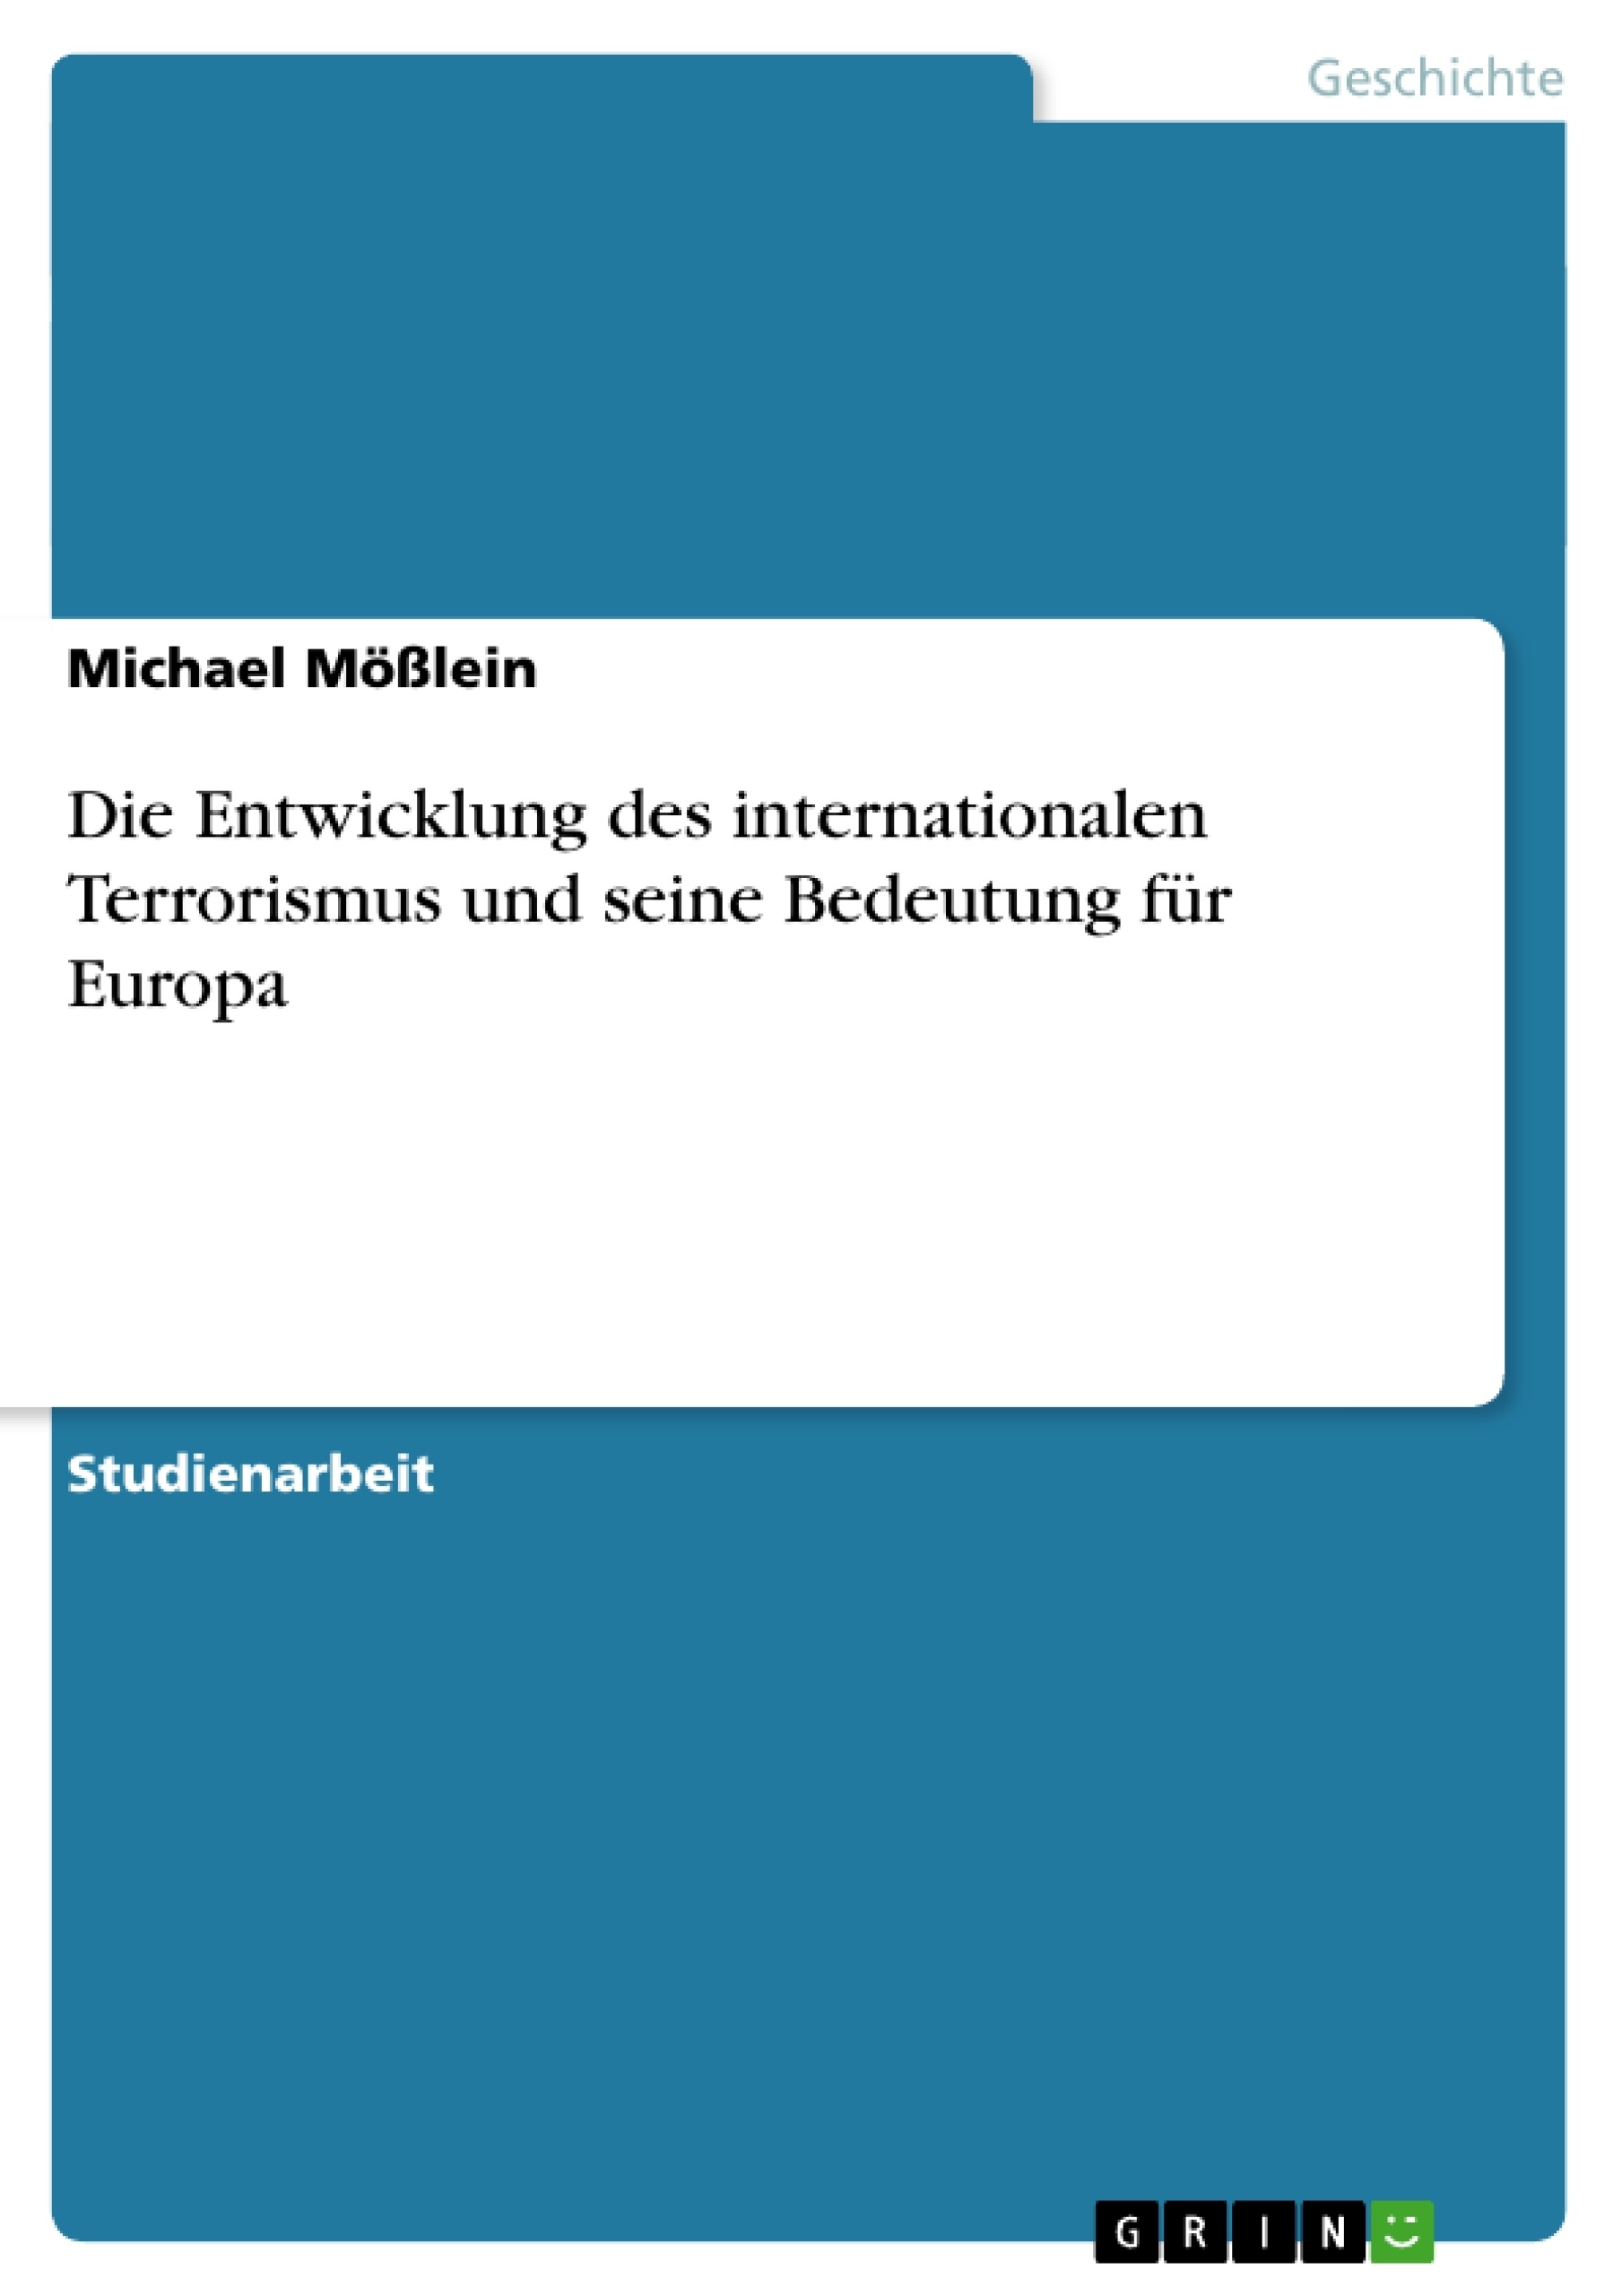 Título: Die Entwicklung des internationalen Terrorismus und seine Bedeutung für Europa